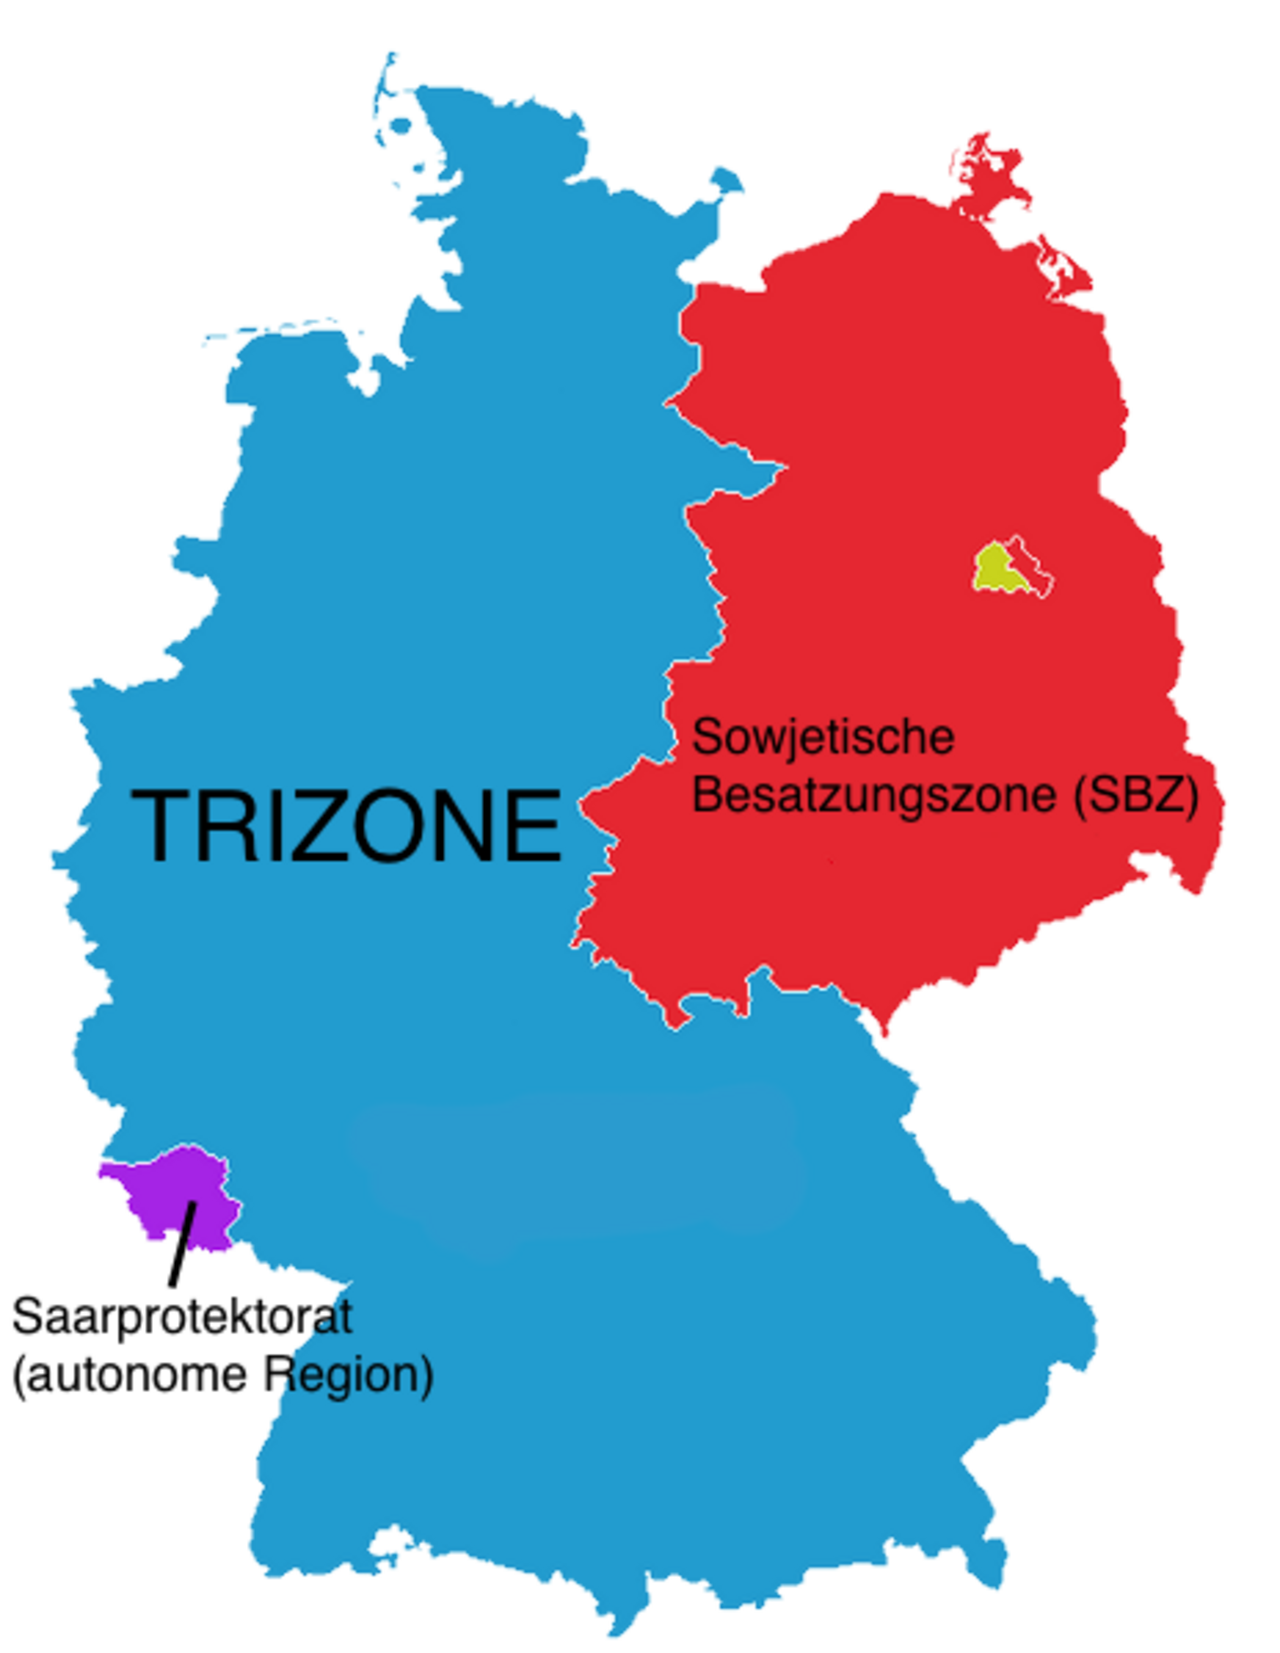 Farbgrafik: Deutschlandkarte mit farblich differenzierten Zonen. Die größte Zone ist in blau gehalten und enthält die Aufschrift "TRIZONE".